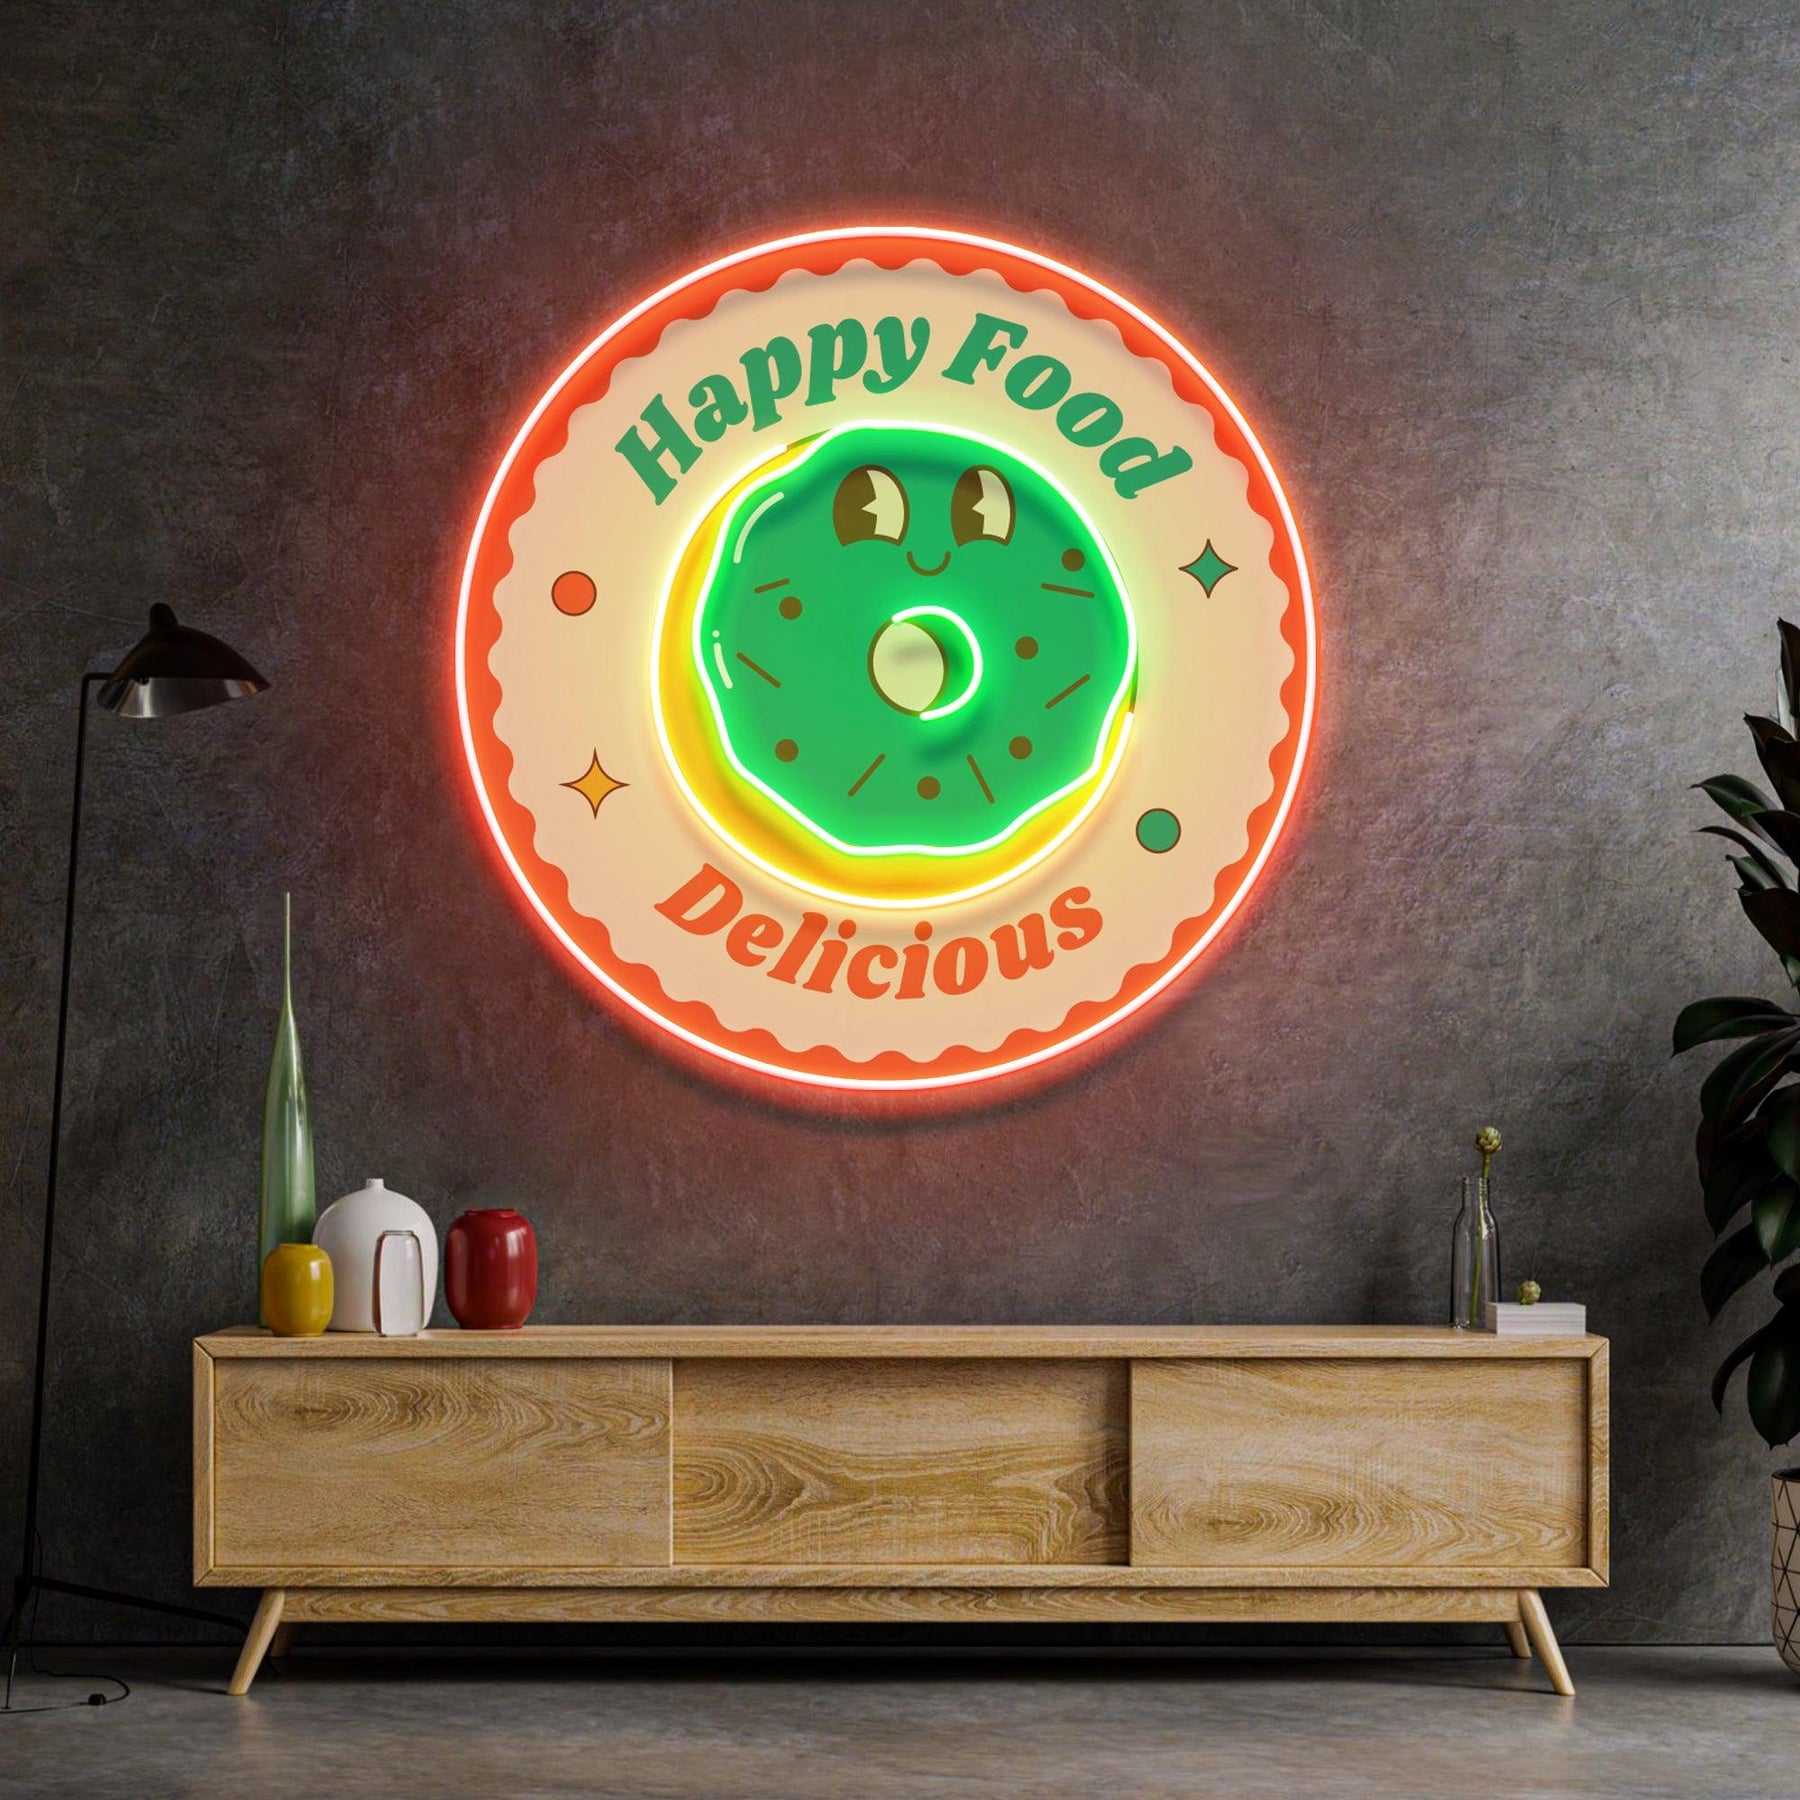 Happy Food Delicious Led Neon Acrylic Artwork